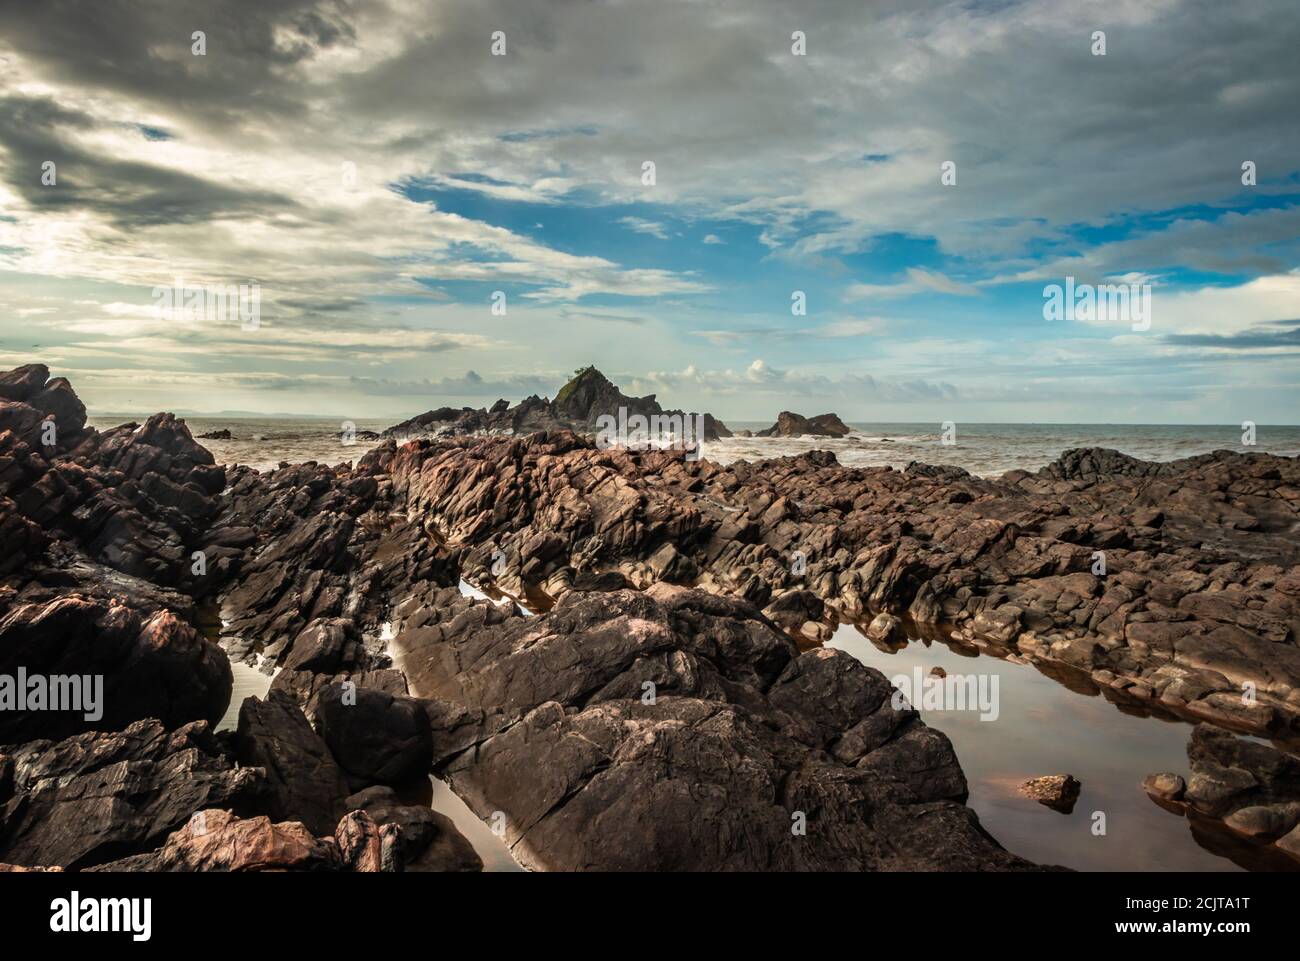 la formazione naturale di roccia a riva del mare a causa delle onde che si infrangono al mattino da un'immagine ad angolo piatto è presa alla spiaggia om gokarna karnataka india Foto Stock